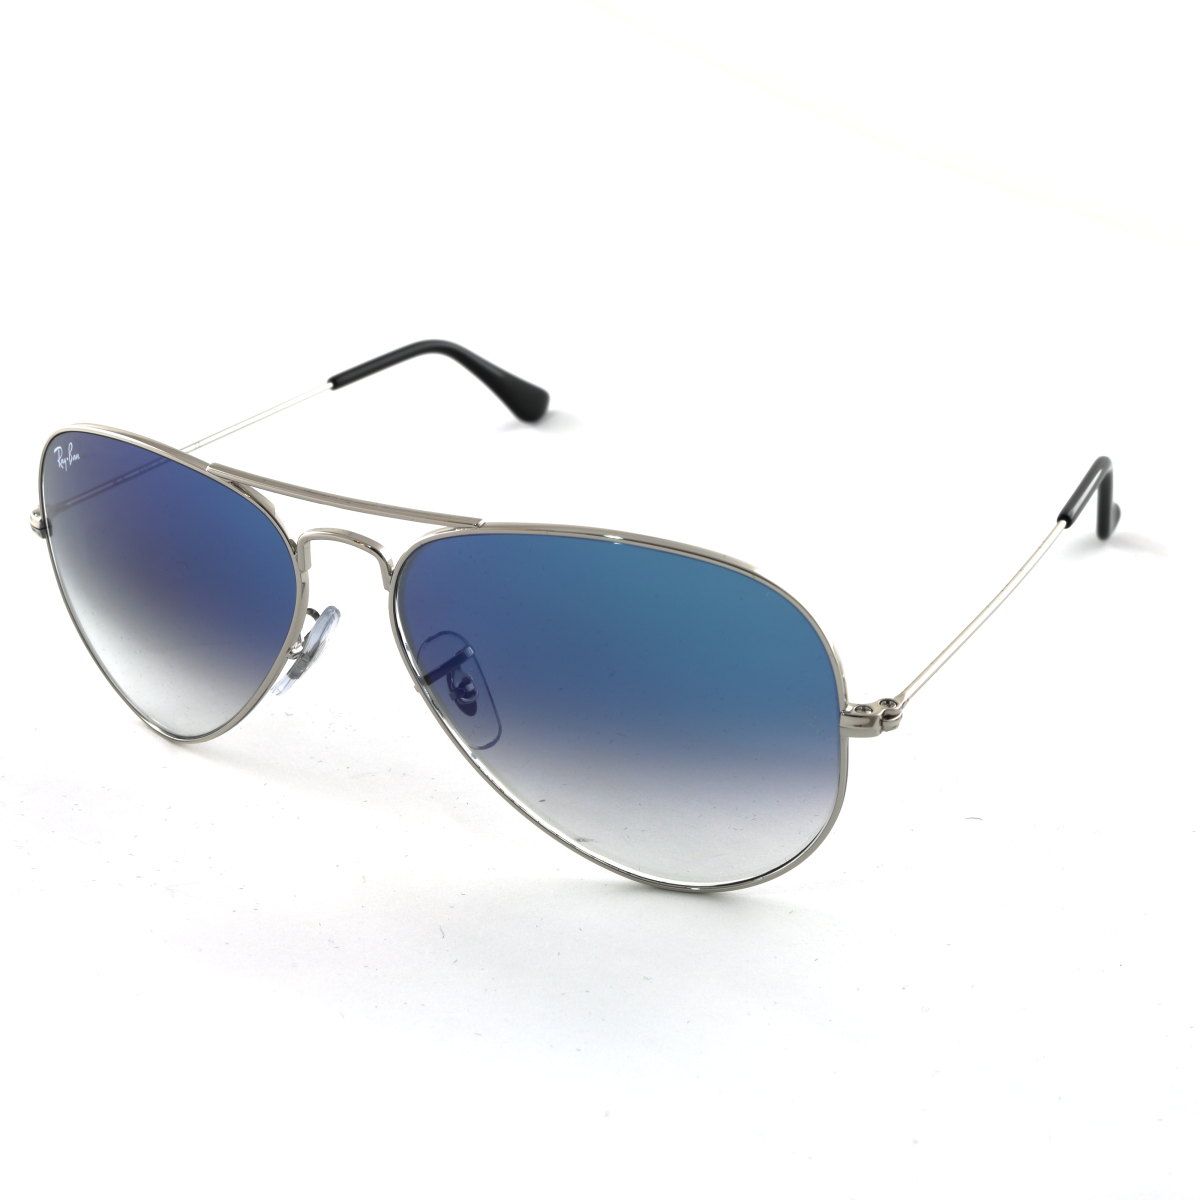 Aviator Sunglasses RB3025 003 3F - size 55